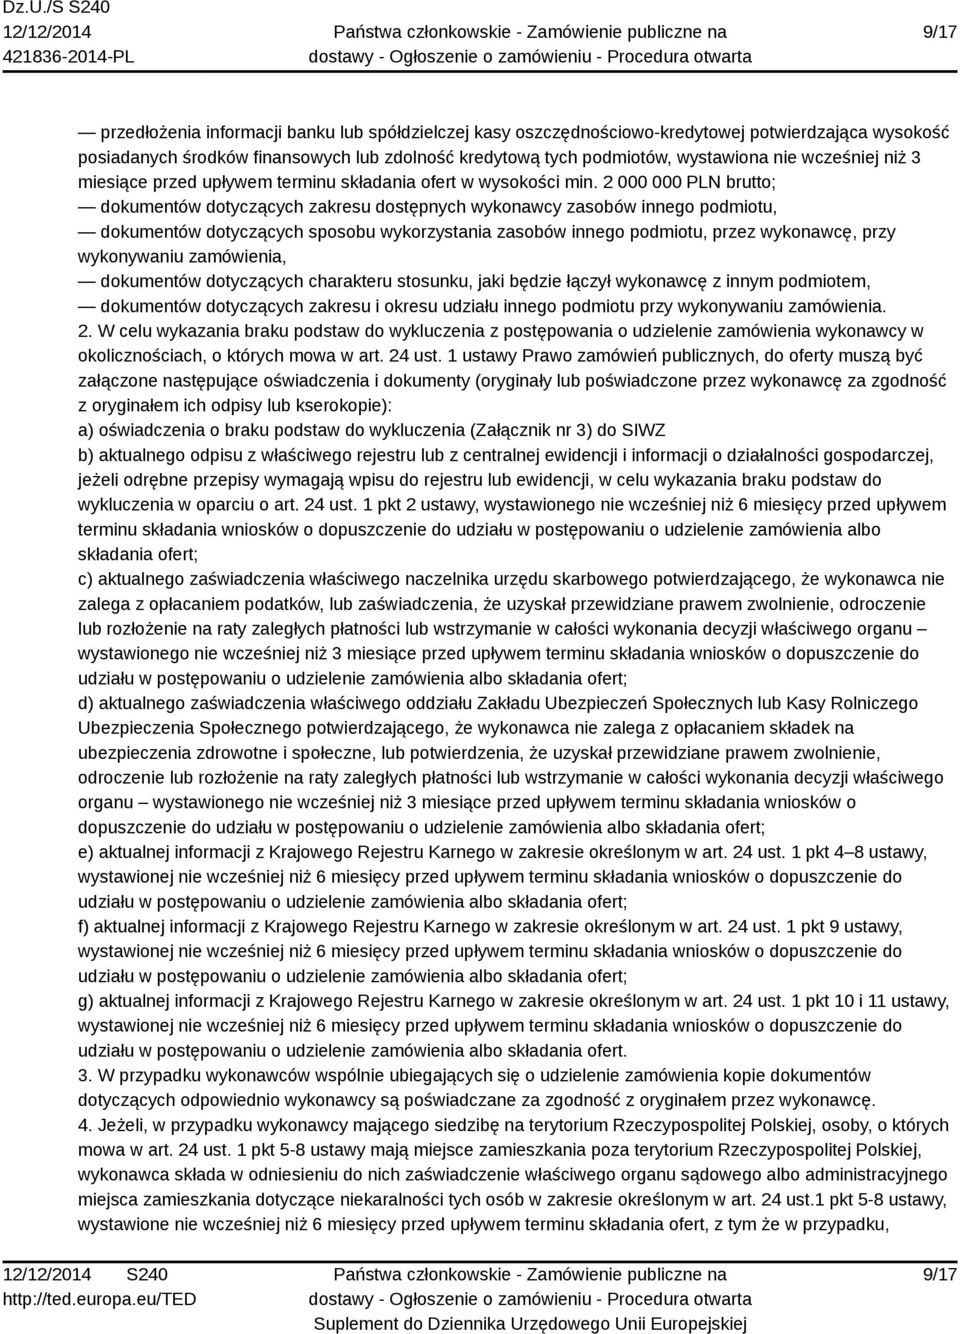 2 000 000 PLN brutto; dokumentów dotyczących zakresu dostępnych wykonawcy zasobów innego podmiotu, dokumentów dotyczących sposobu wykorzystania zasobów innego podmiotu, przez wykonawcę, przy